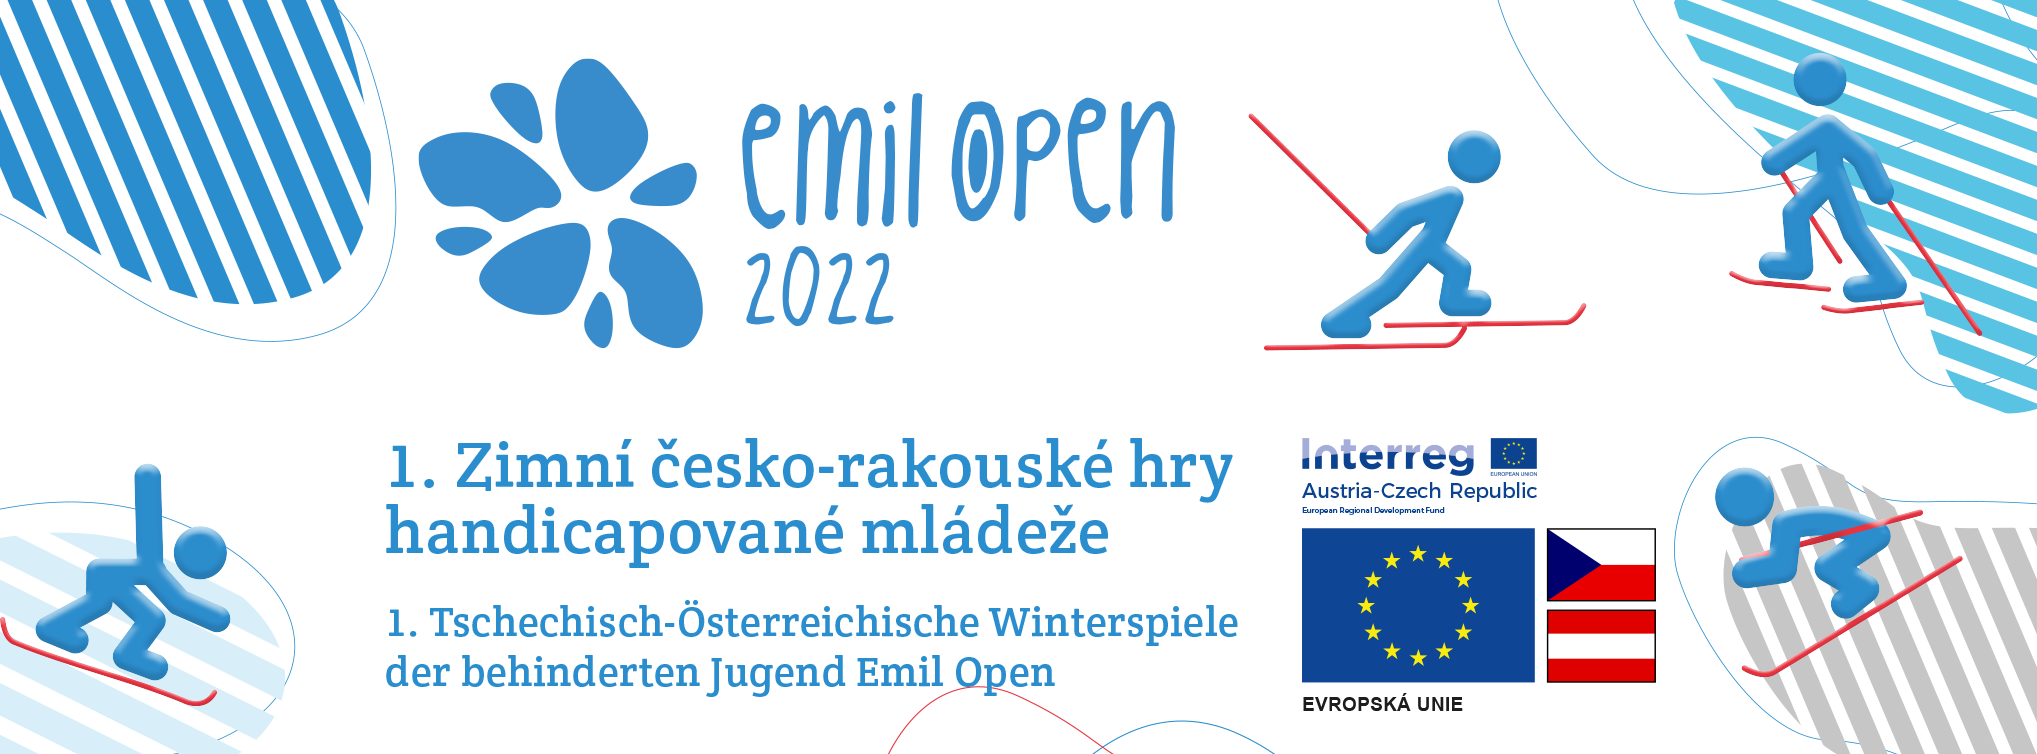 Zimní česko-rakouské hry handicapované mládeže Emil Open